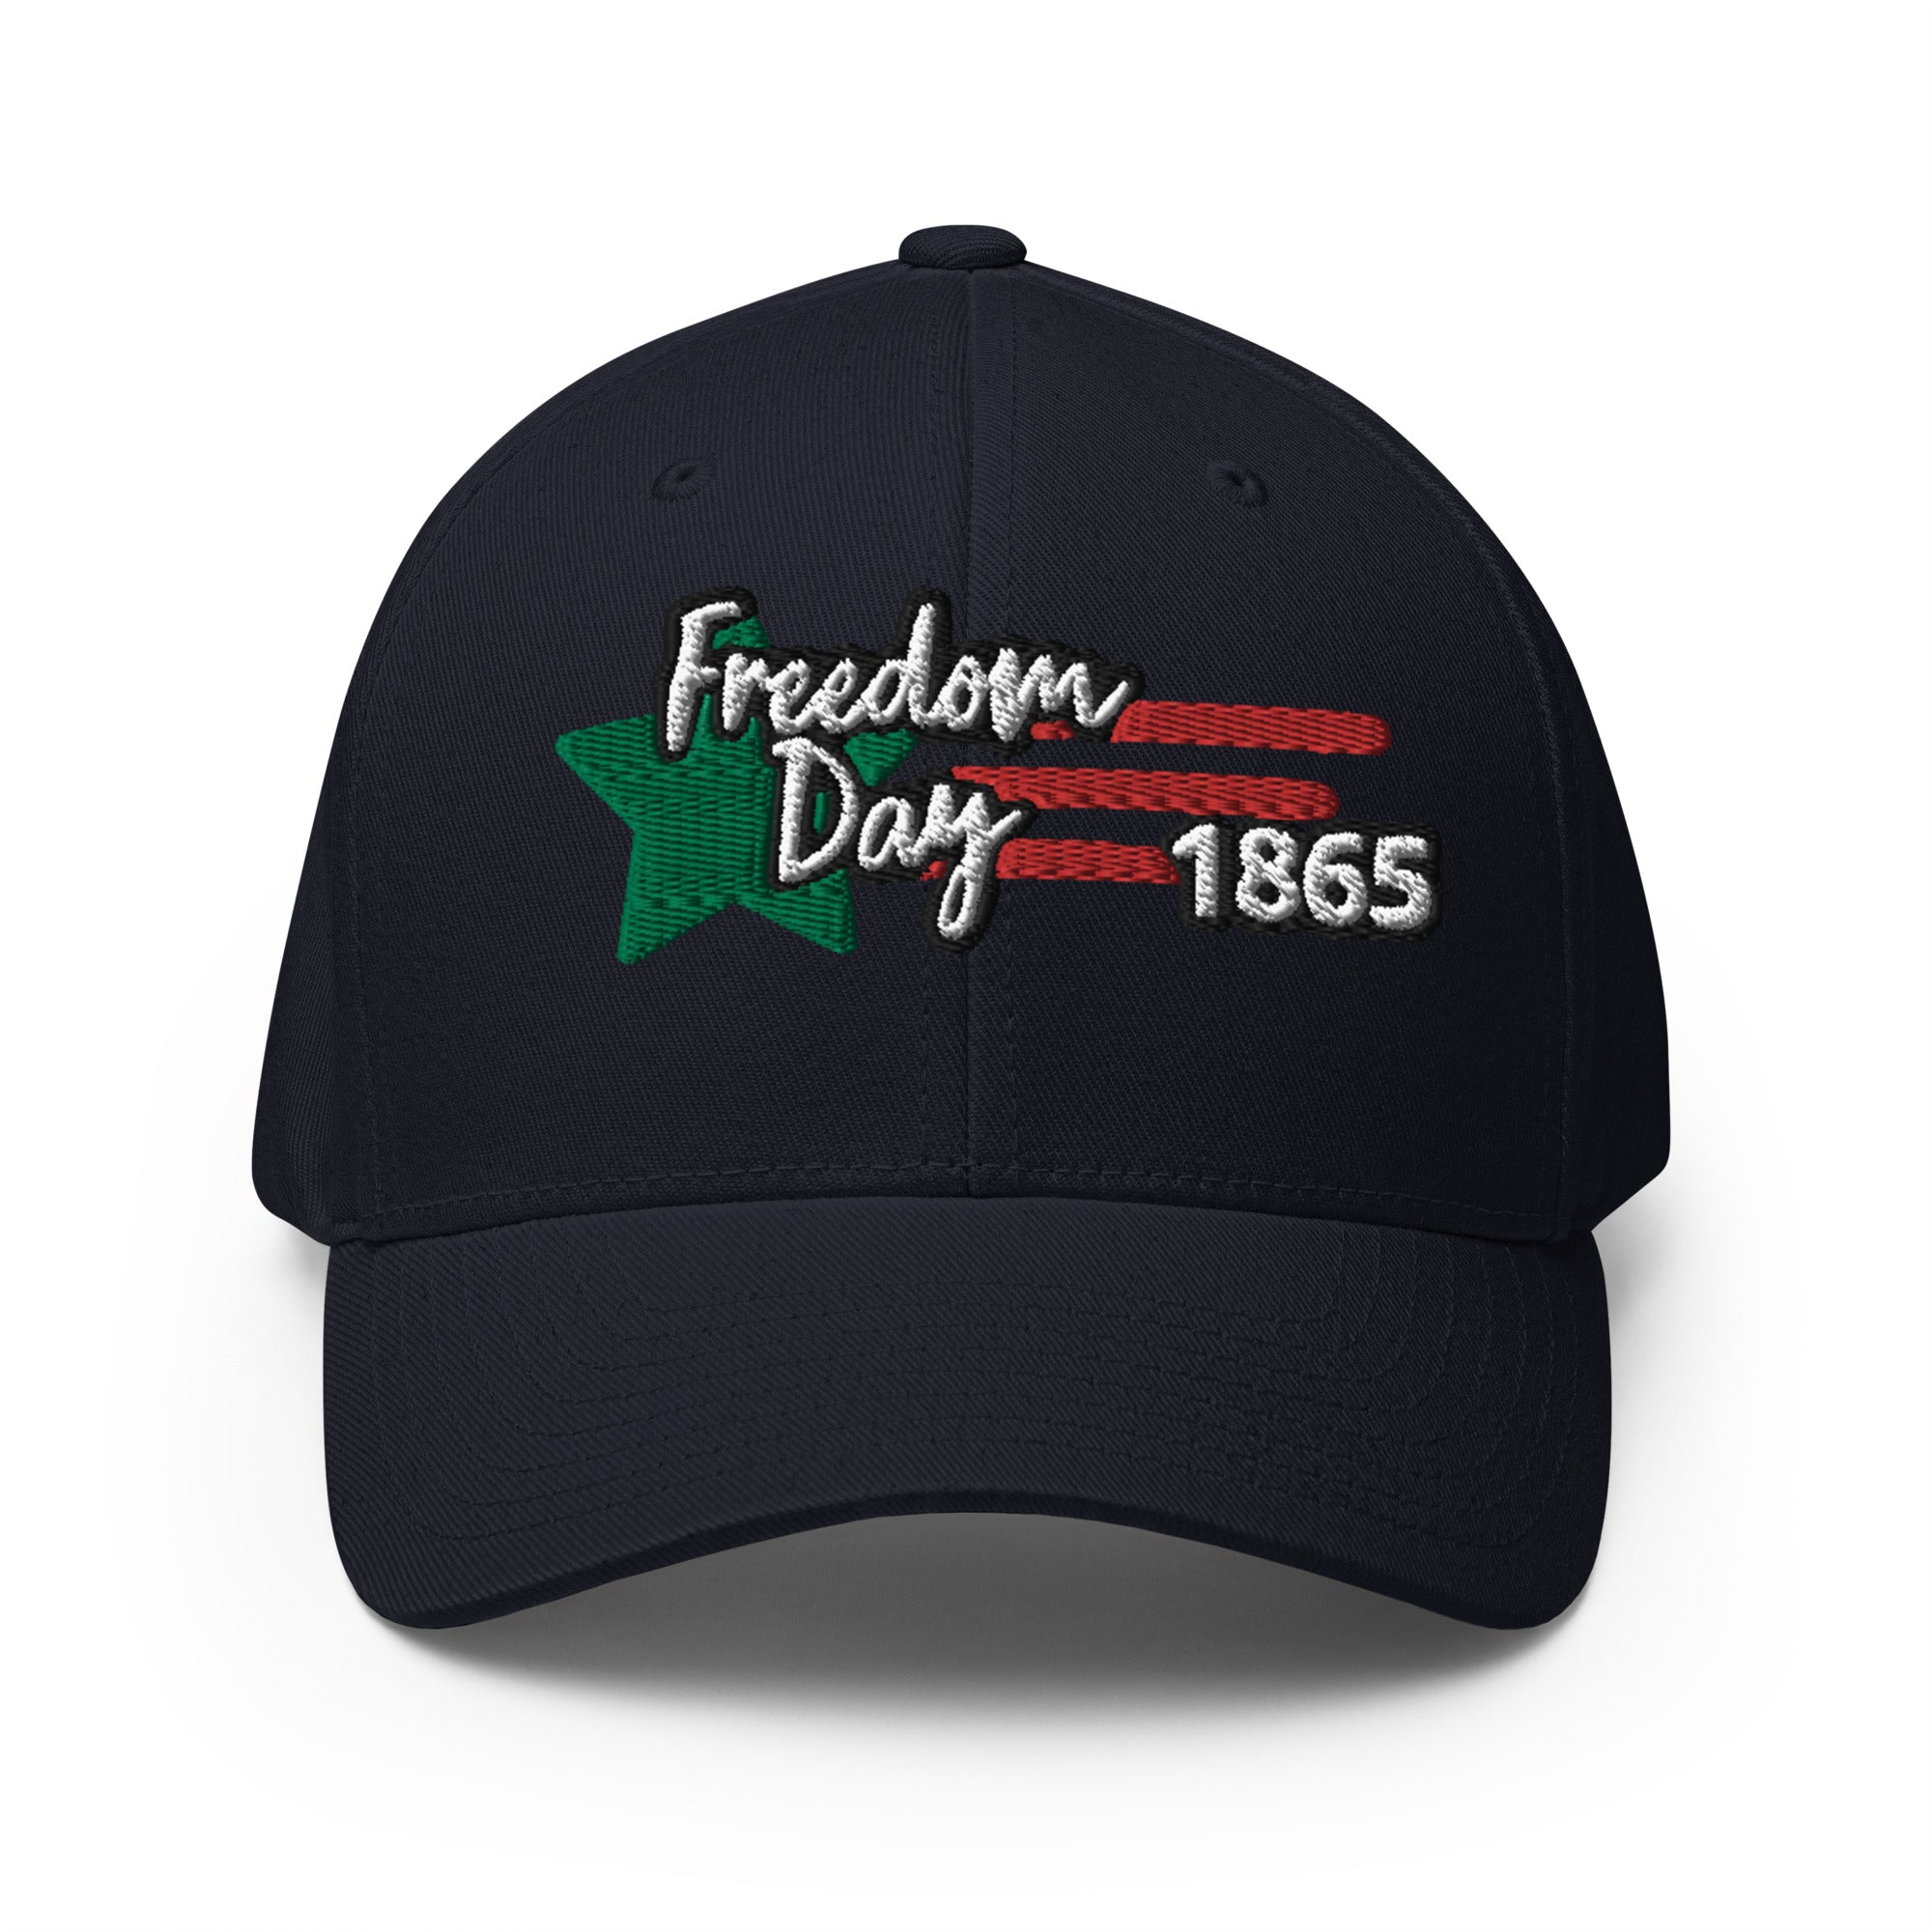 Freedom Day 1865 Black Camo Structured Twill Cap (Premium comfort)